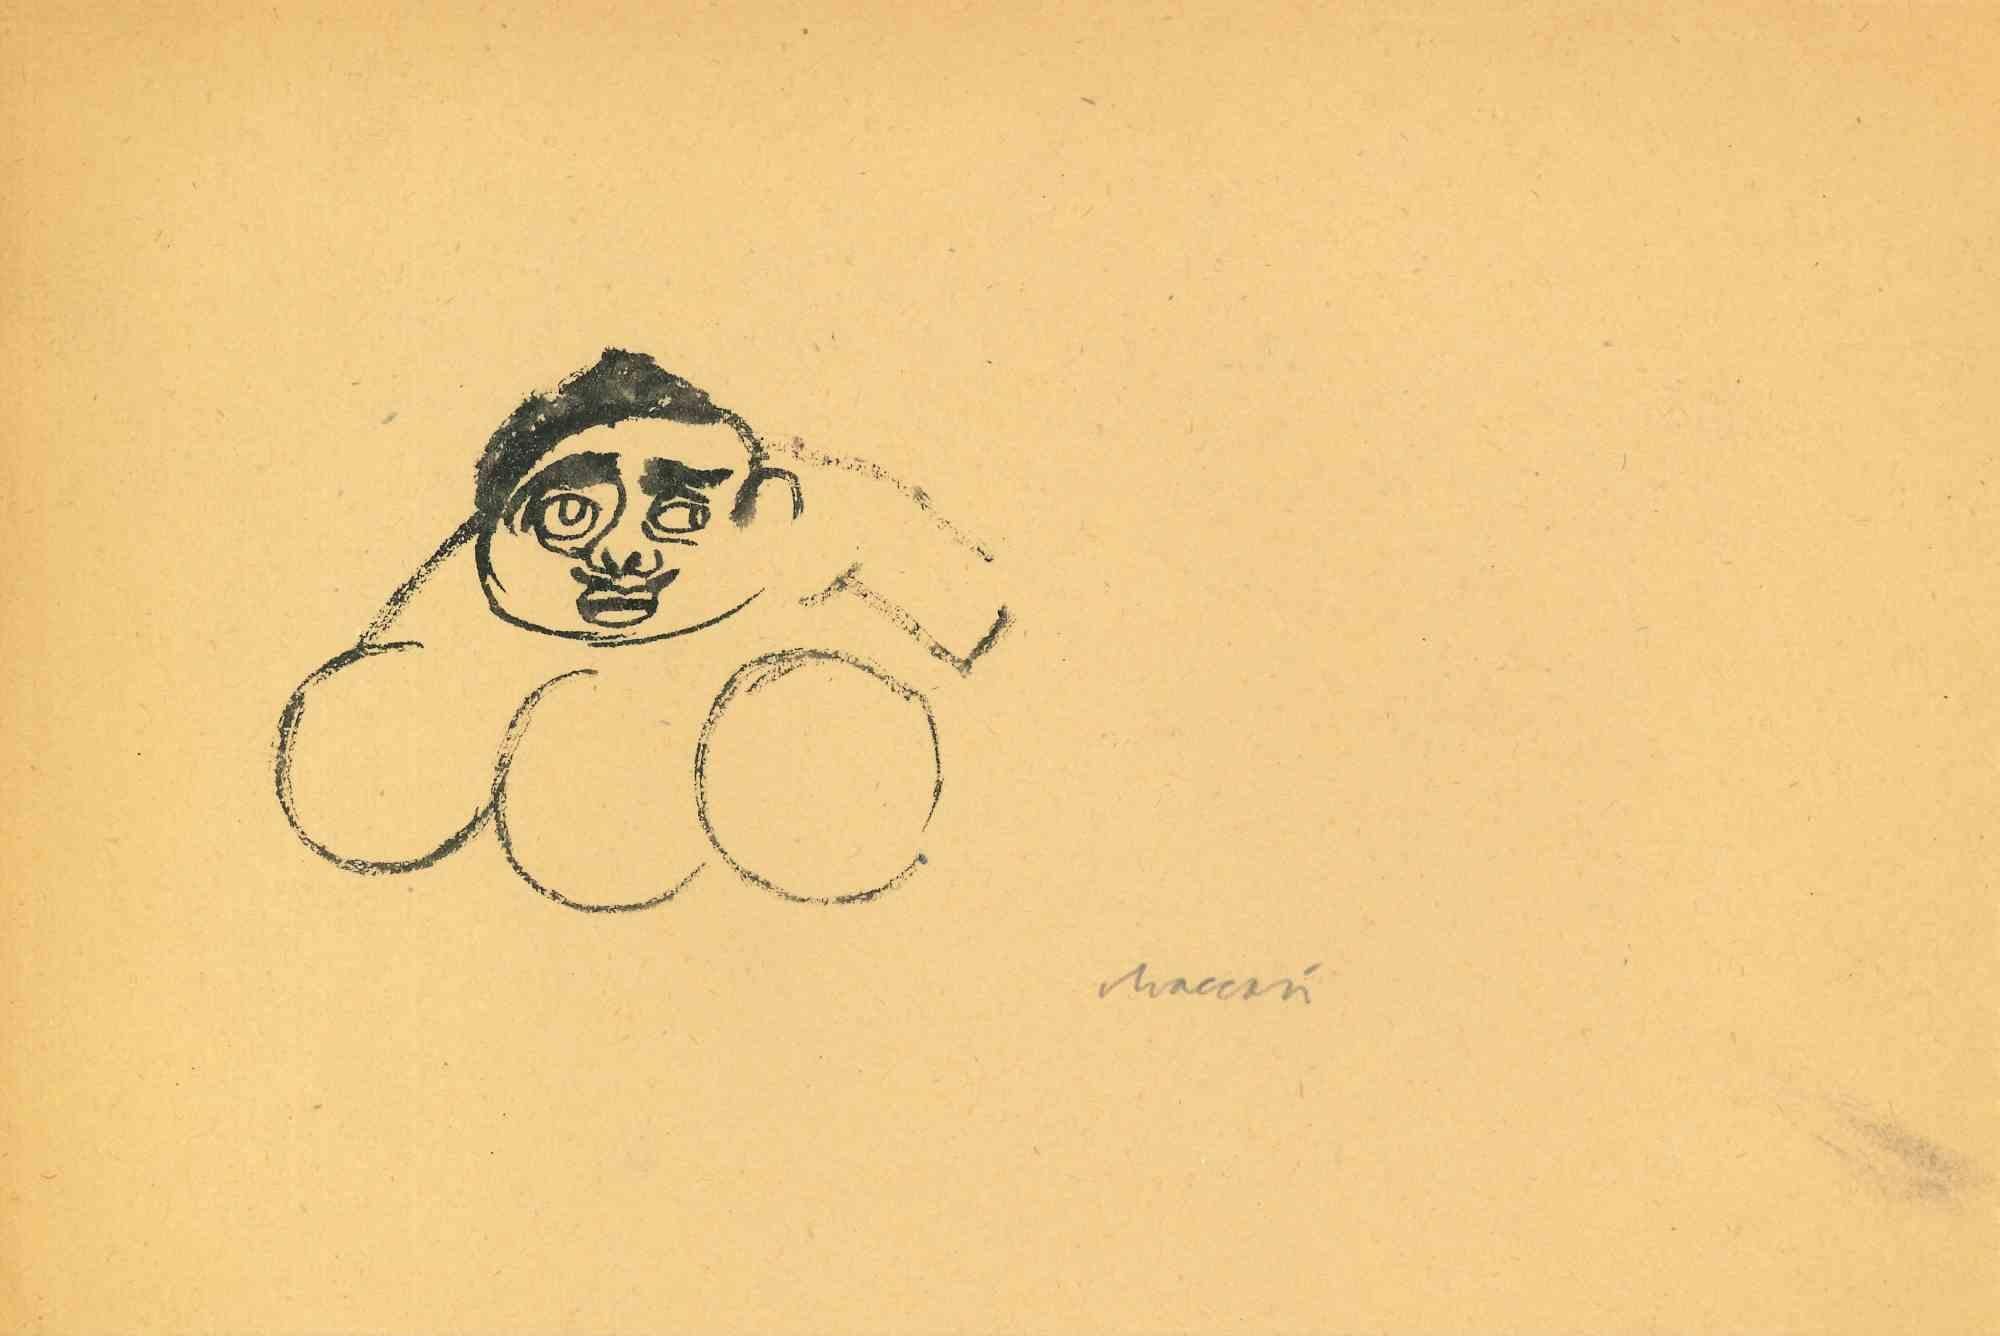 Portrait est un dessin à l'aquarelle réalisé par Mino Maccari (1924-1989) au milieu du 20e siècle.

Signé à la main.

Bon état avec de légères rousseurs.

Mino Maccari (Sienne, 1924-Rome, 16 juin 1989) est un écrivain, peintre, graveur et